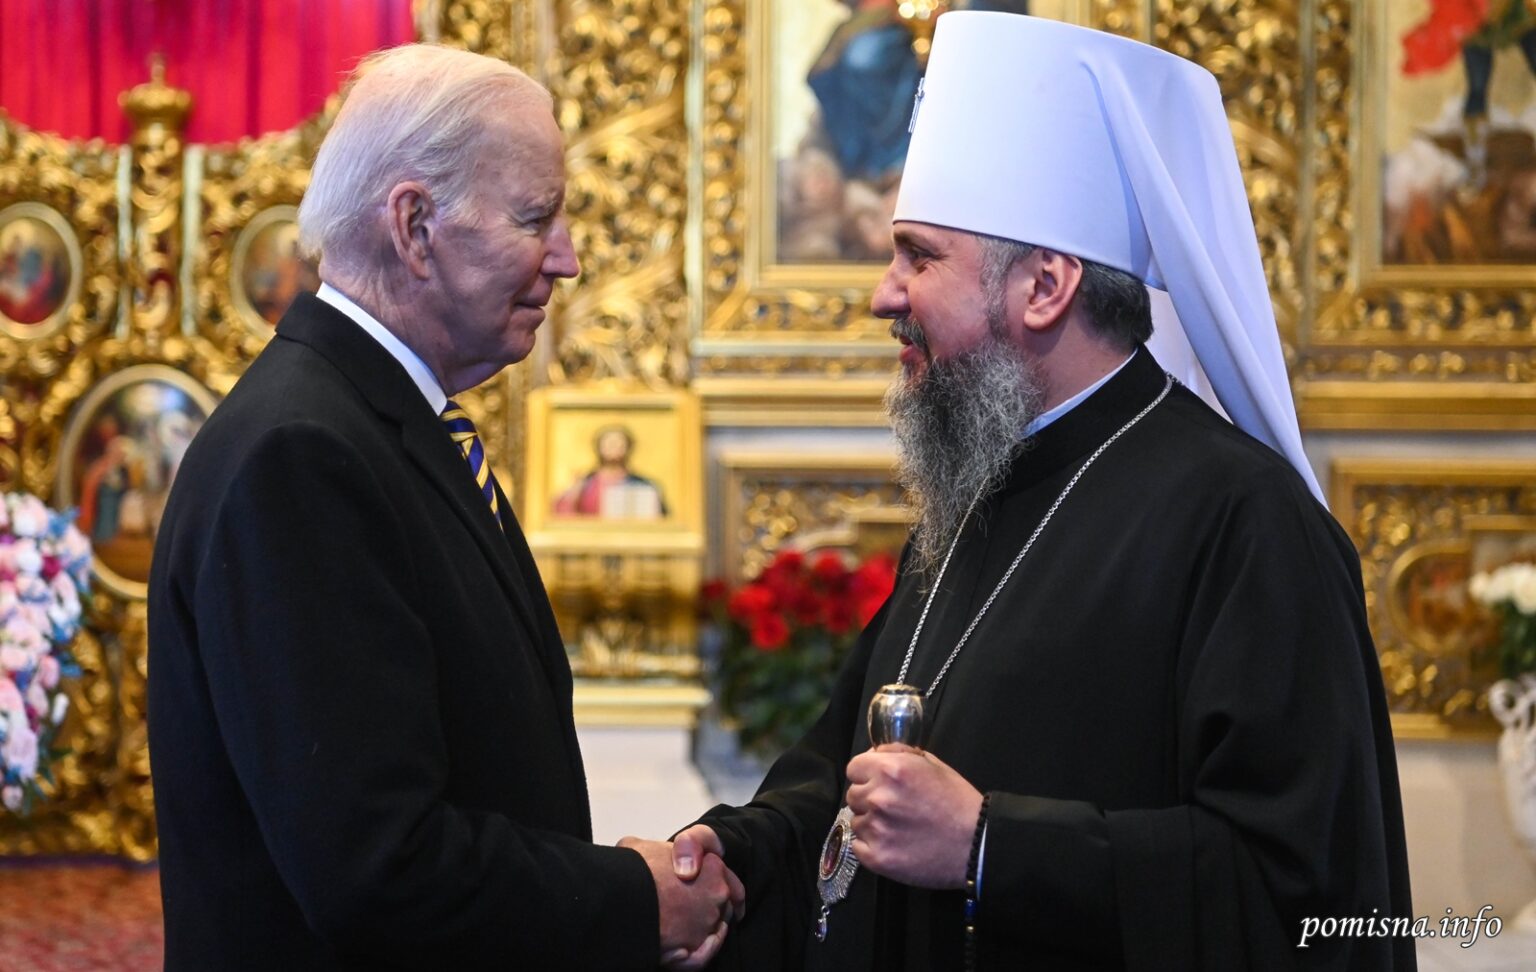 Les présidents des États-unis et de l’ukraine ont visité la cathédrale saint-michel à kiev